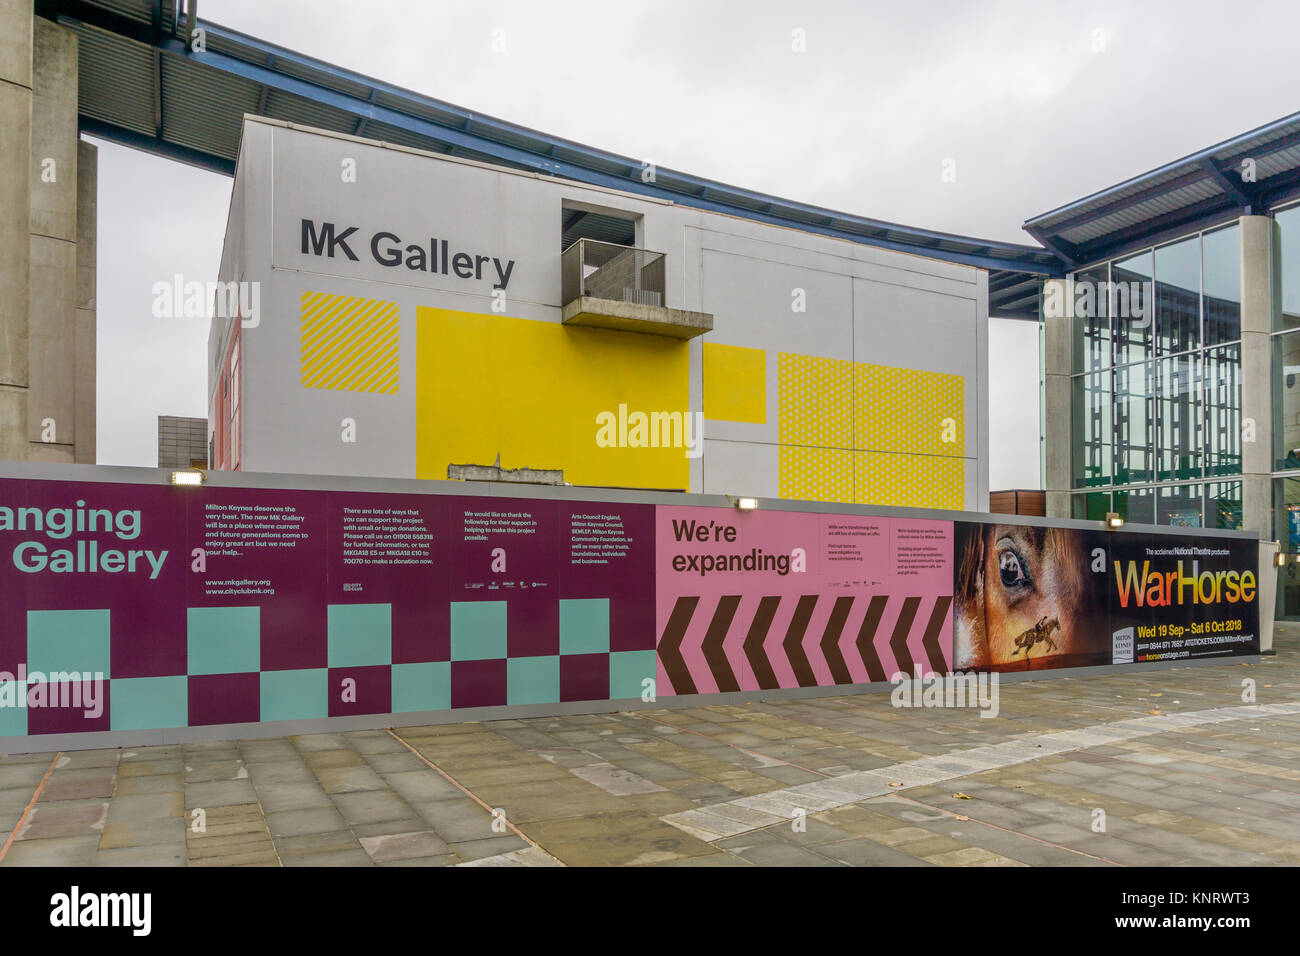 Façade de MK Galerie, une galerie d'arts visuels contemporains accueillant des expositions et des ateliers ; fermé en 2017 pour l'expansion et de rénovation. Banque D'Images